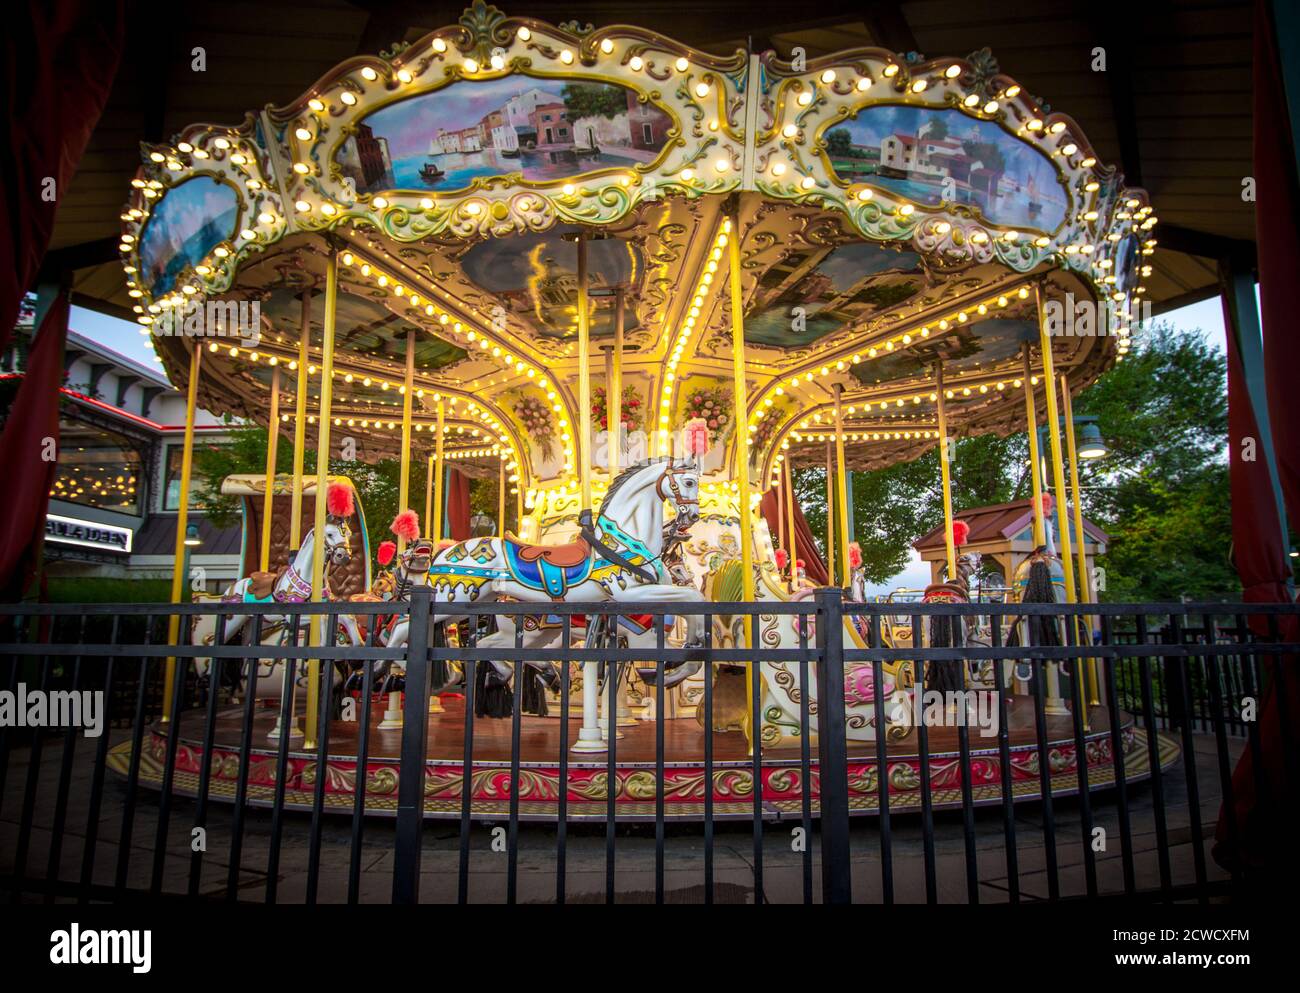 Giostra illuminata presso l'Island Amusement Park nella località turistica di Pigeon Forge, Tennessee, sulle Smoky Mountain. Foto Stock